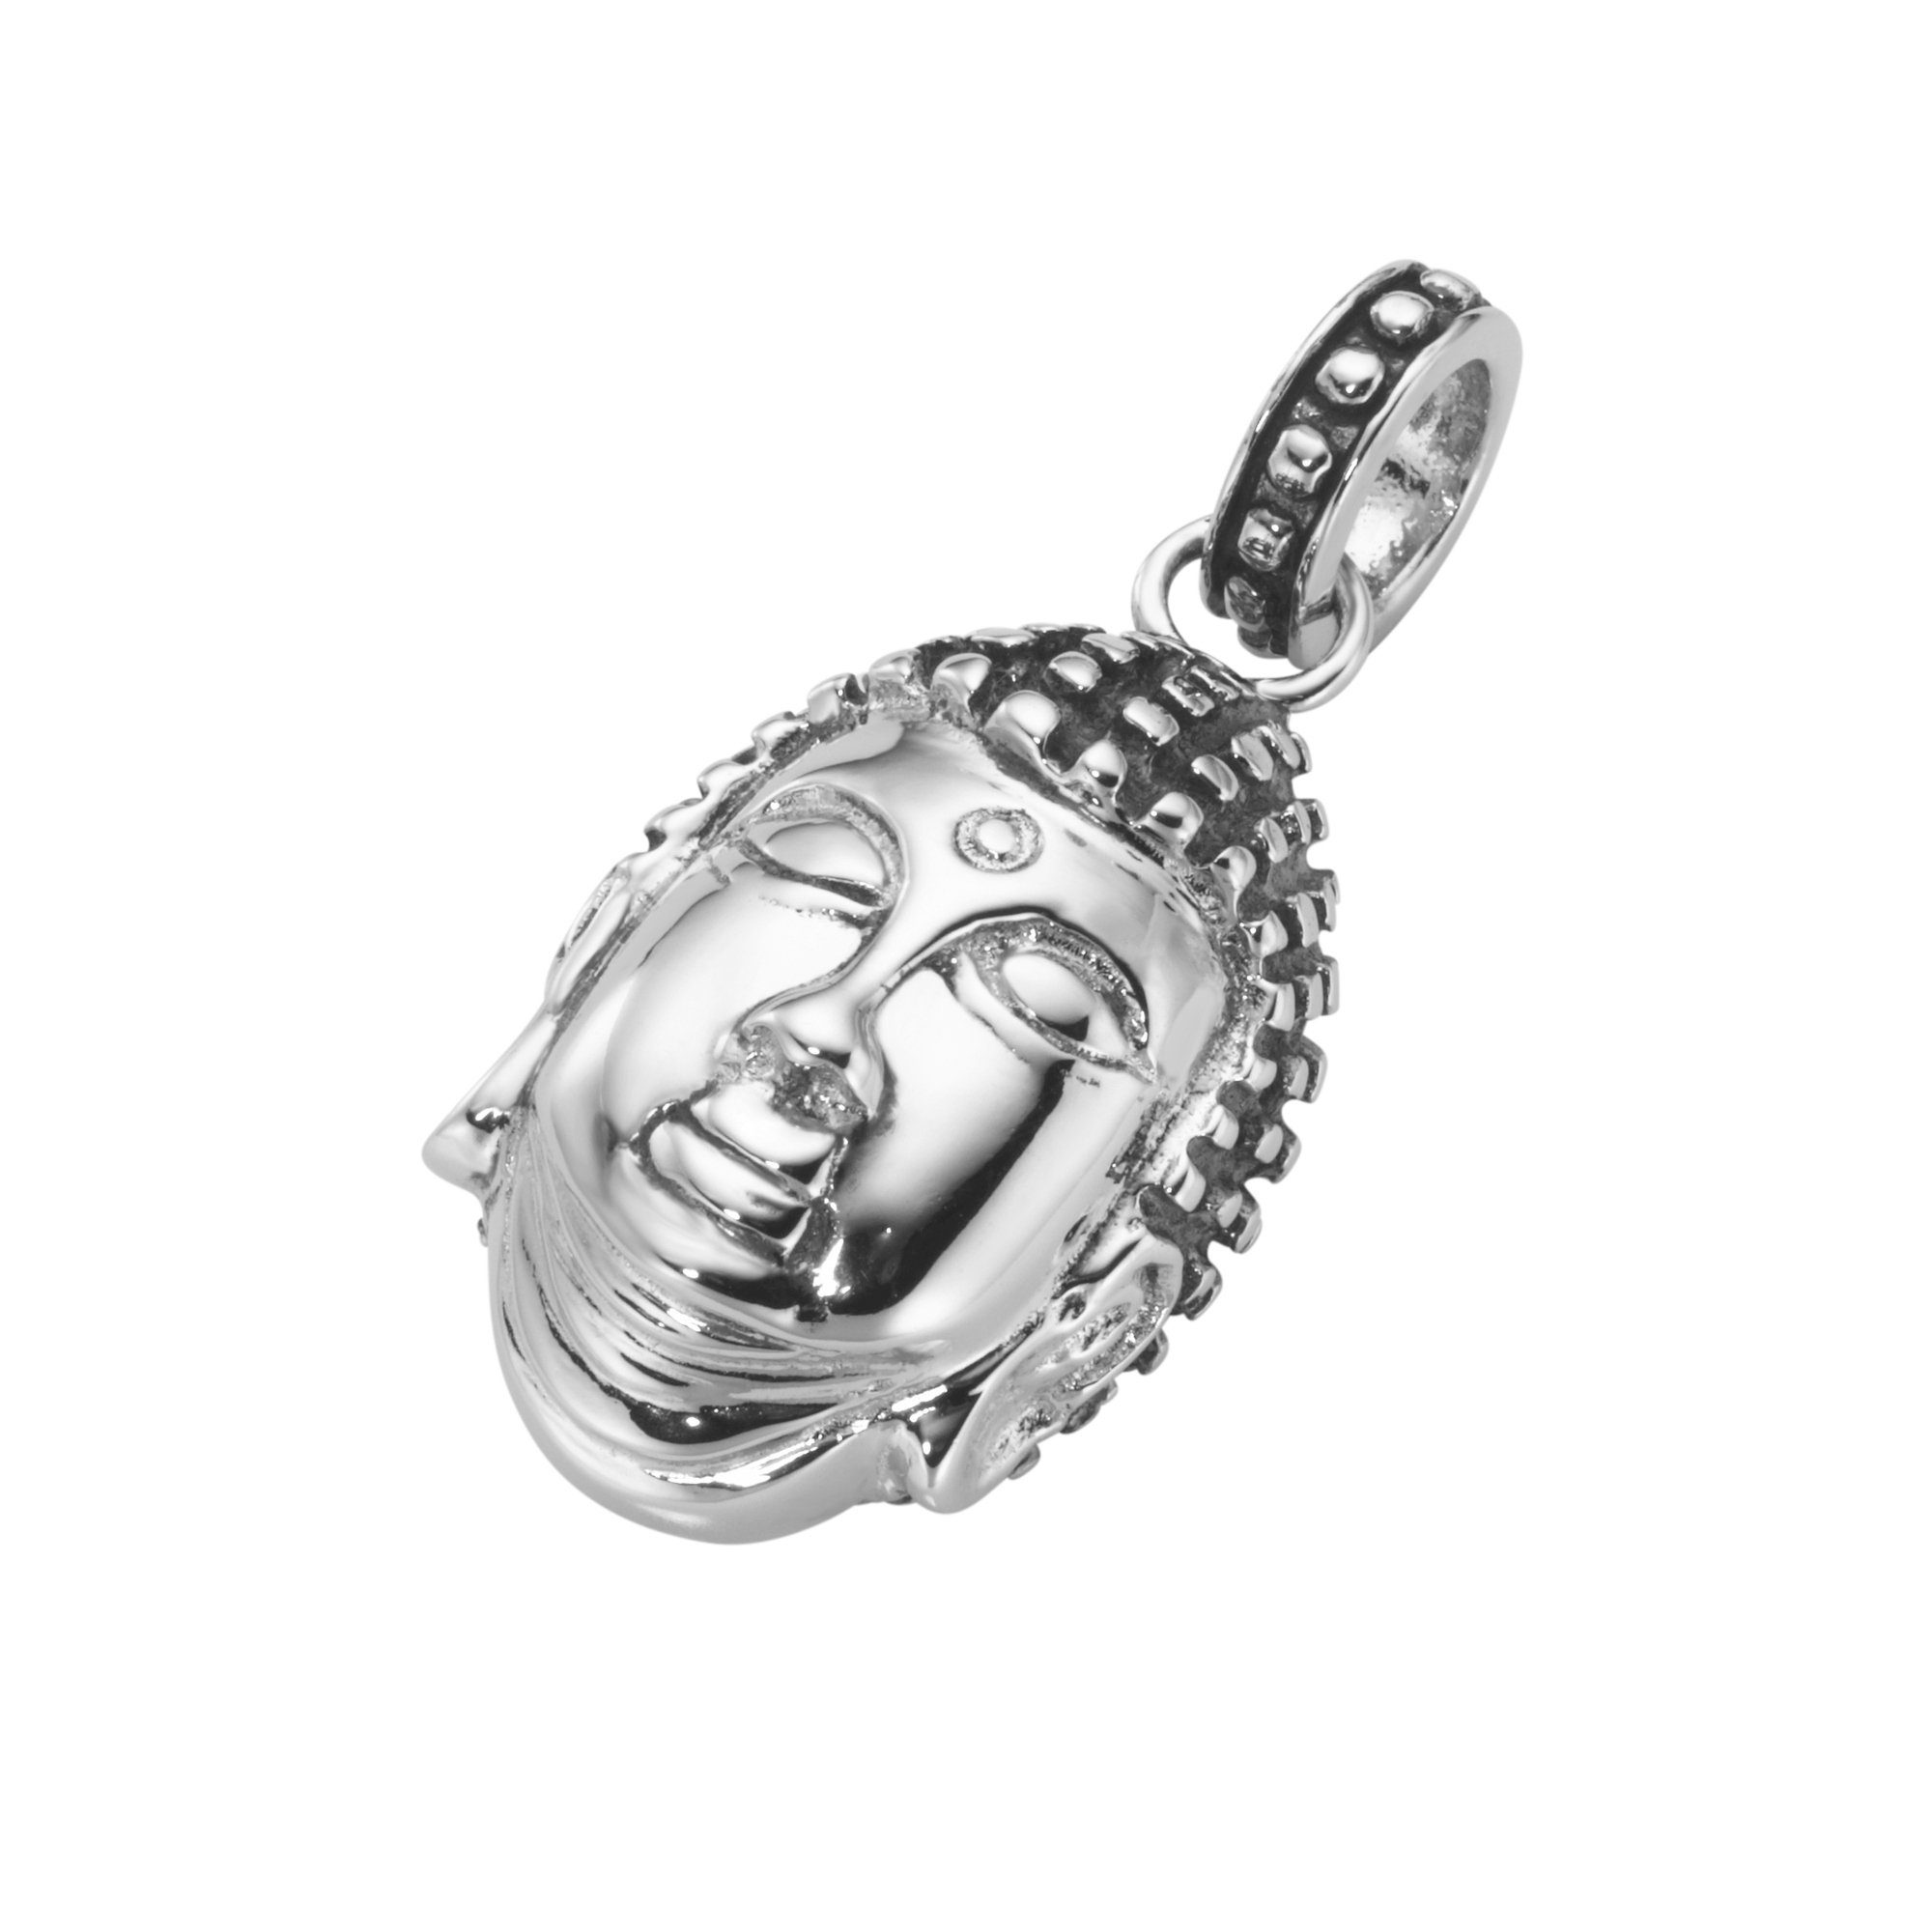 MARTELLO Silber Kettenanhänger teilweise 925 GIORGIO geschwärzt, Buddha-Kopf, MILANO